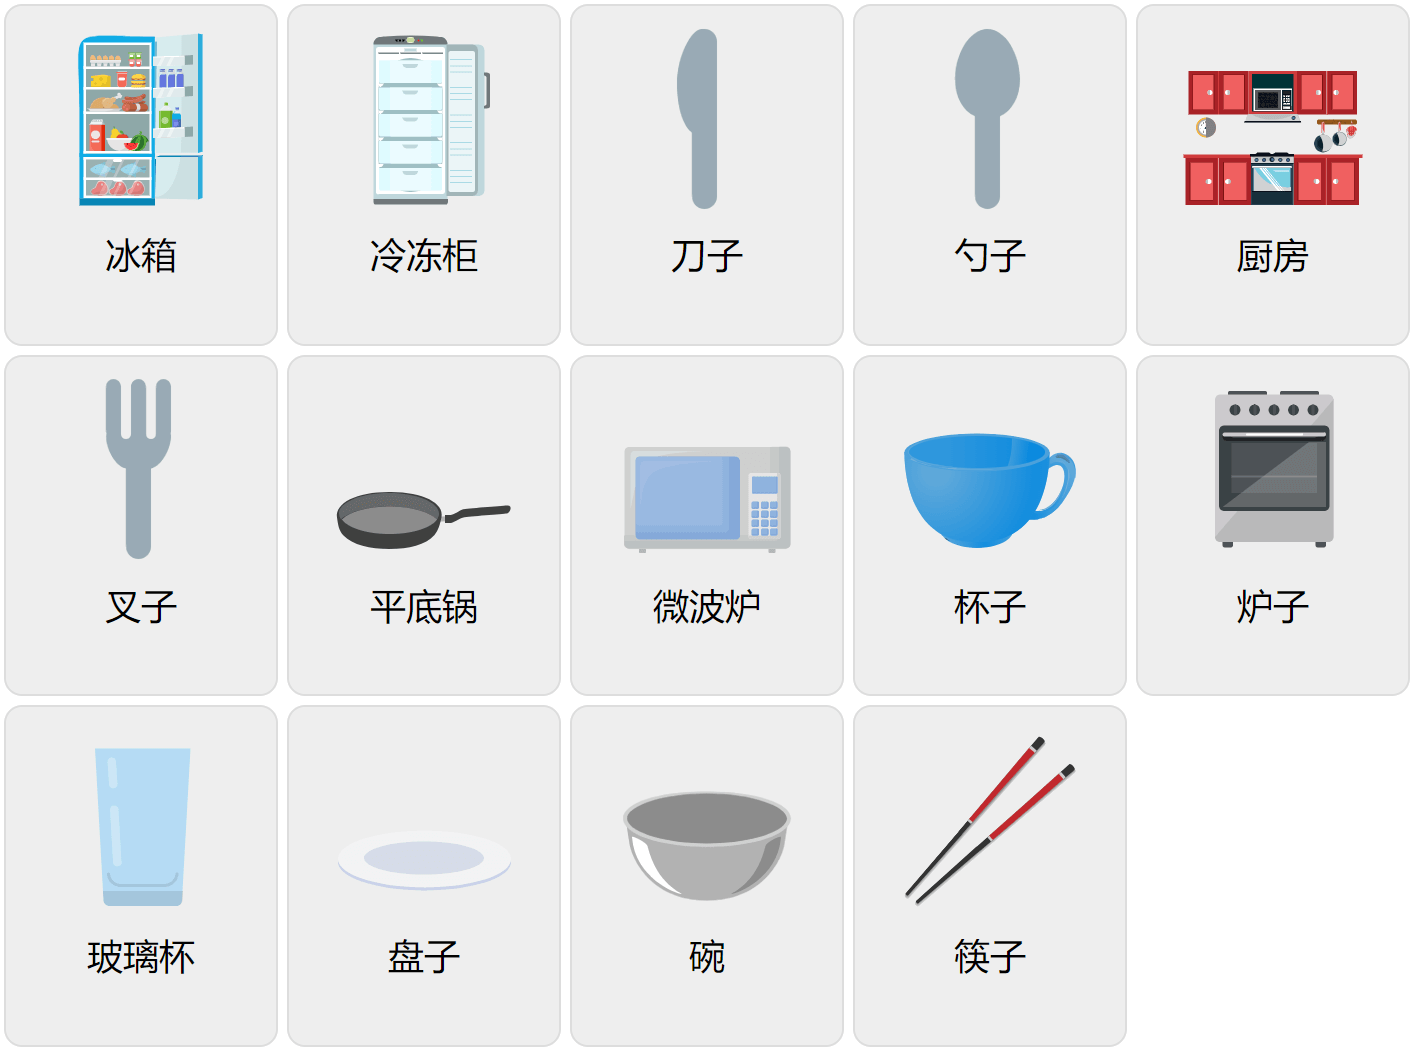 Küchenvokabular auf Mandarin-Chinesisch